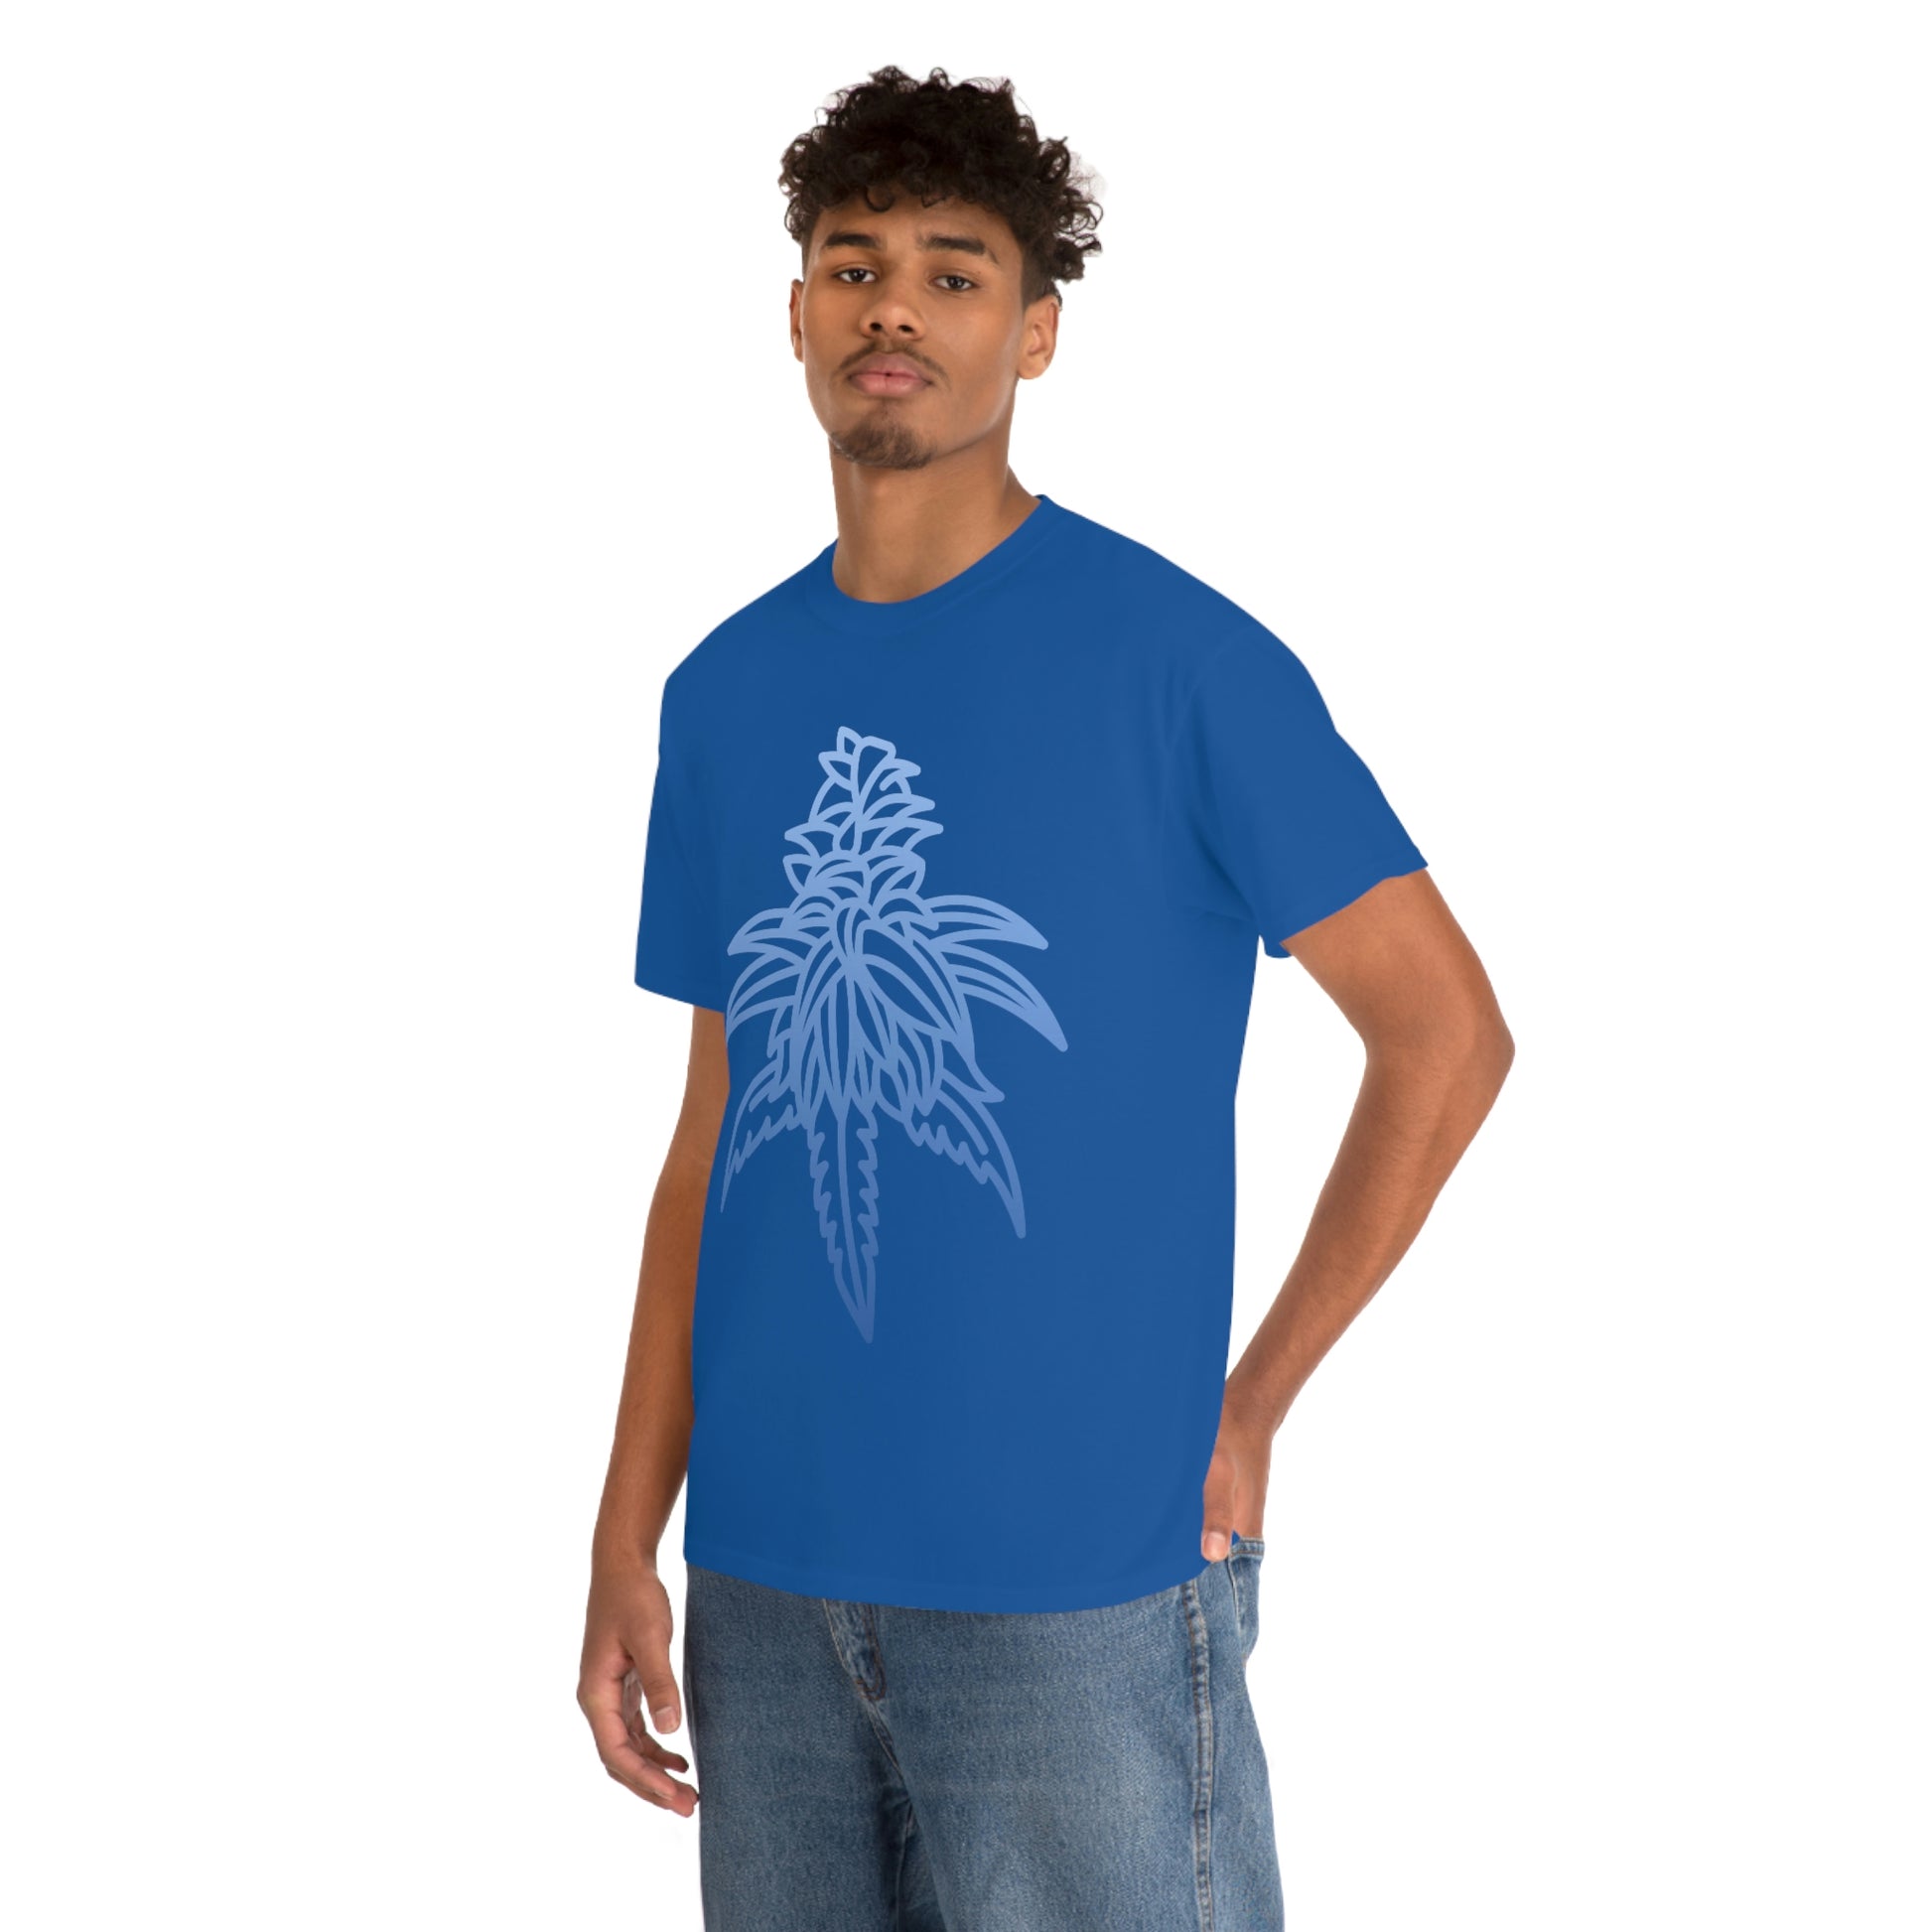 a man wearing a Blue Dream Cannabis Tee with a white cannabis leaf design.